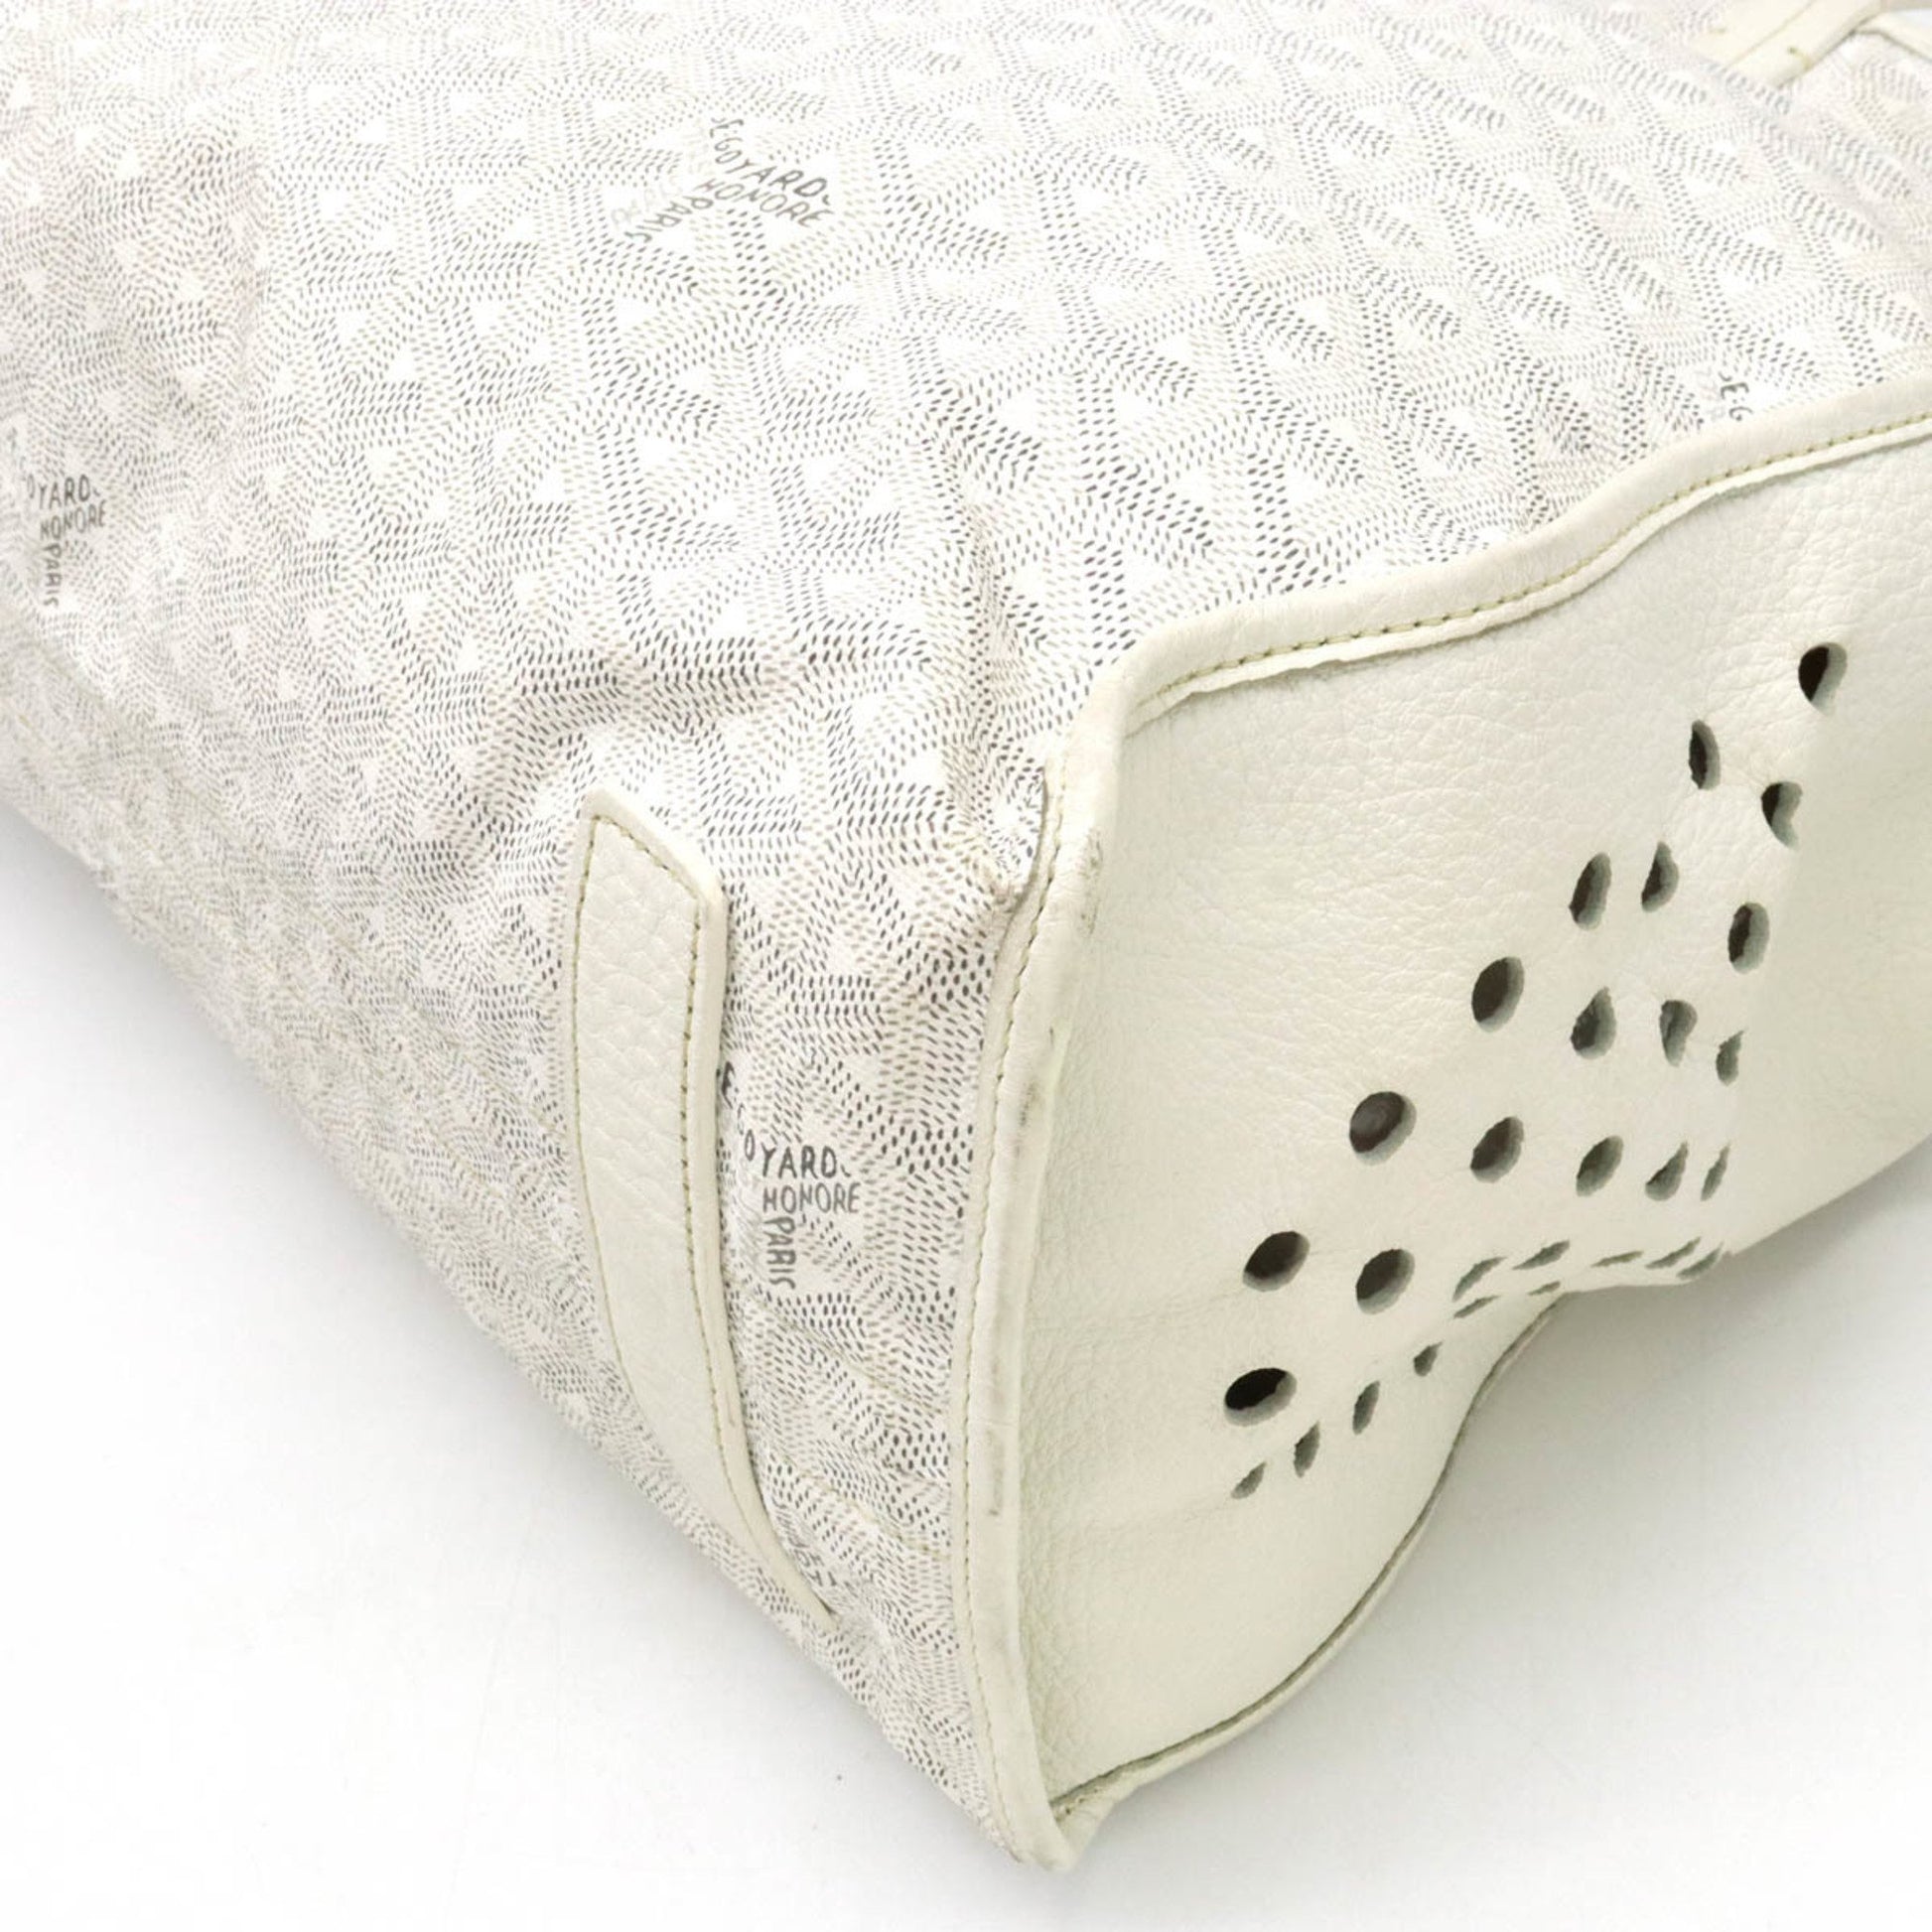 GOYARD Ardy PM herringbone tote bag shoulder PVC leather white